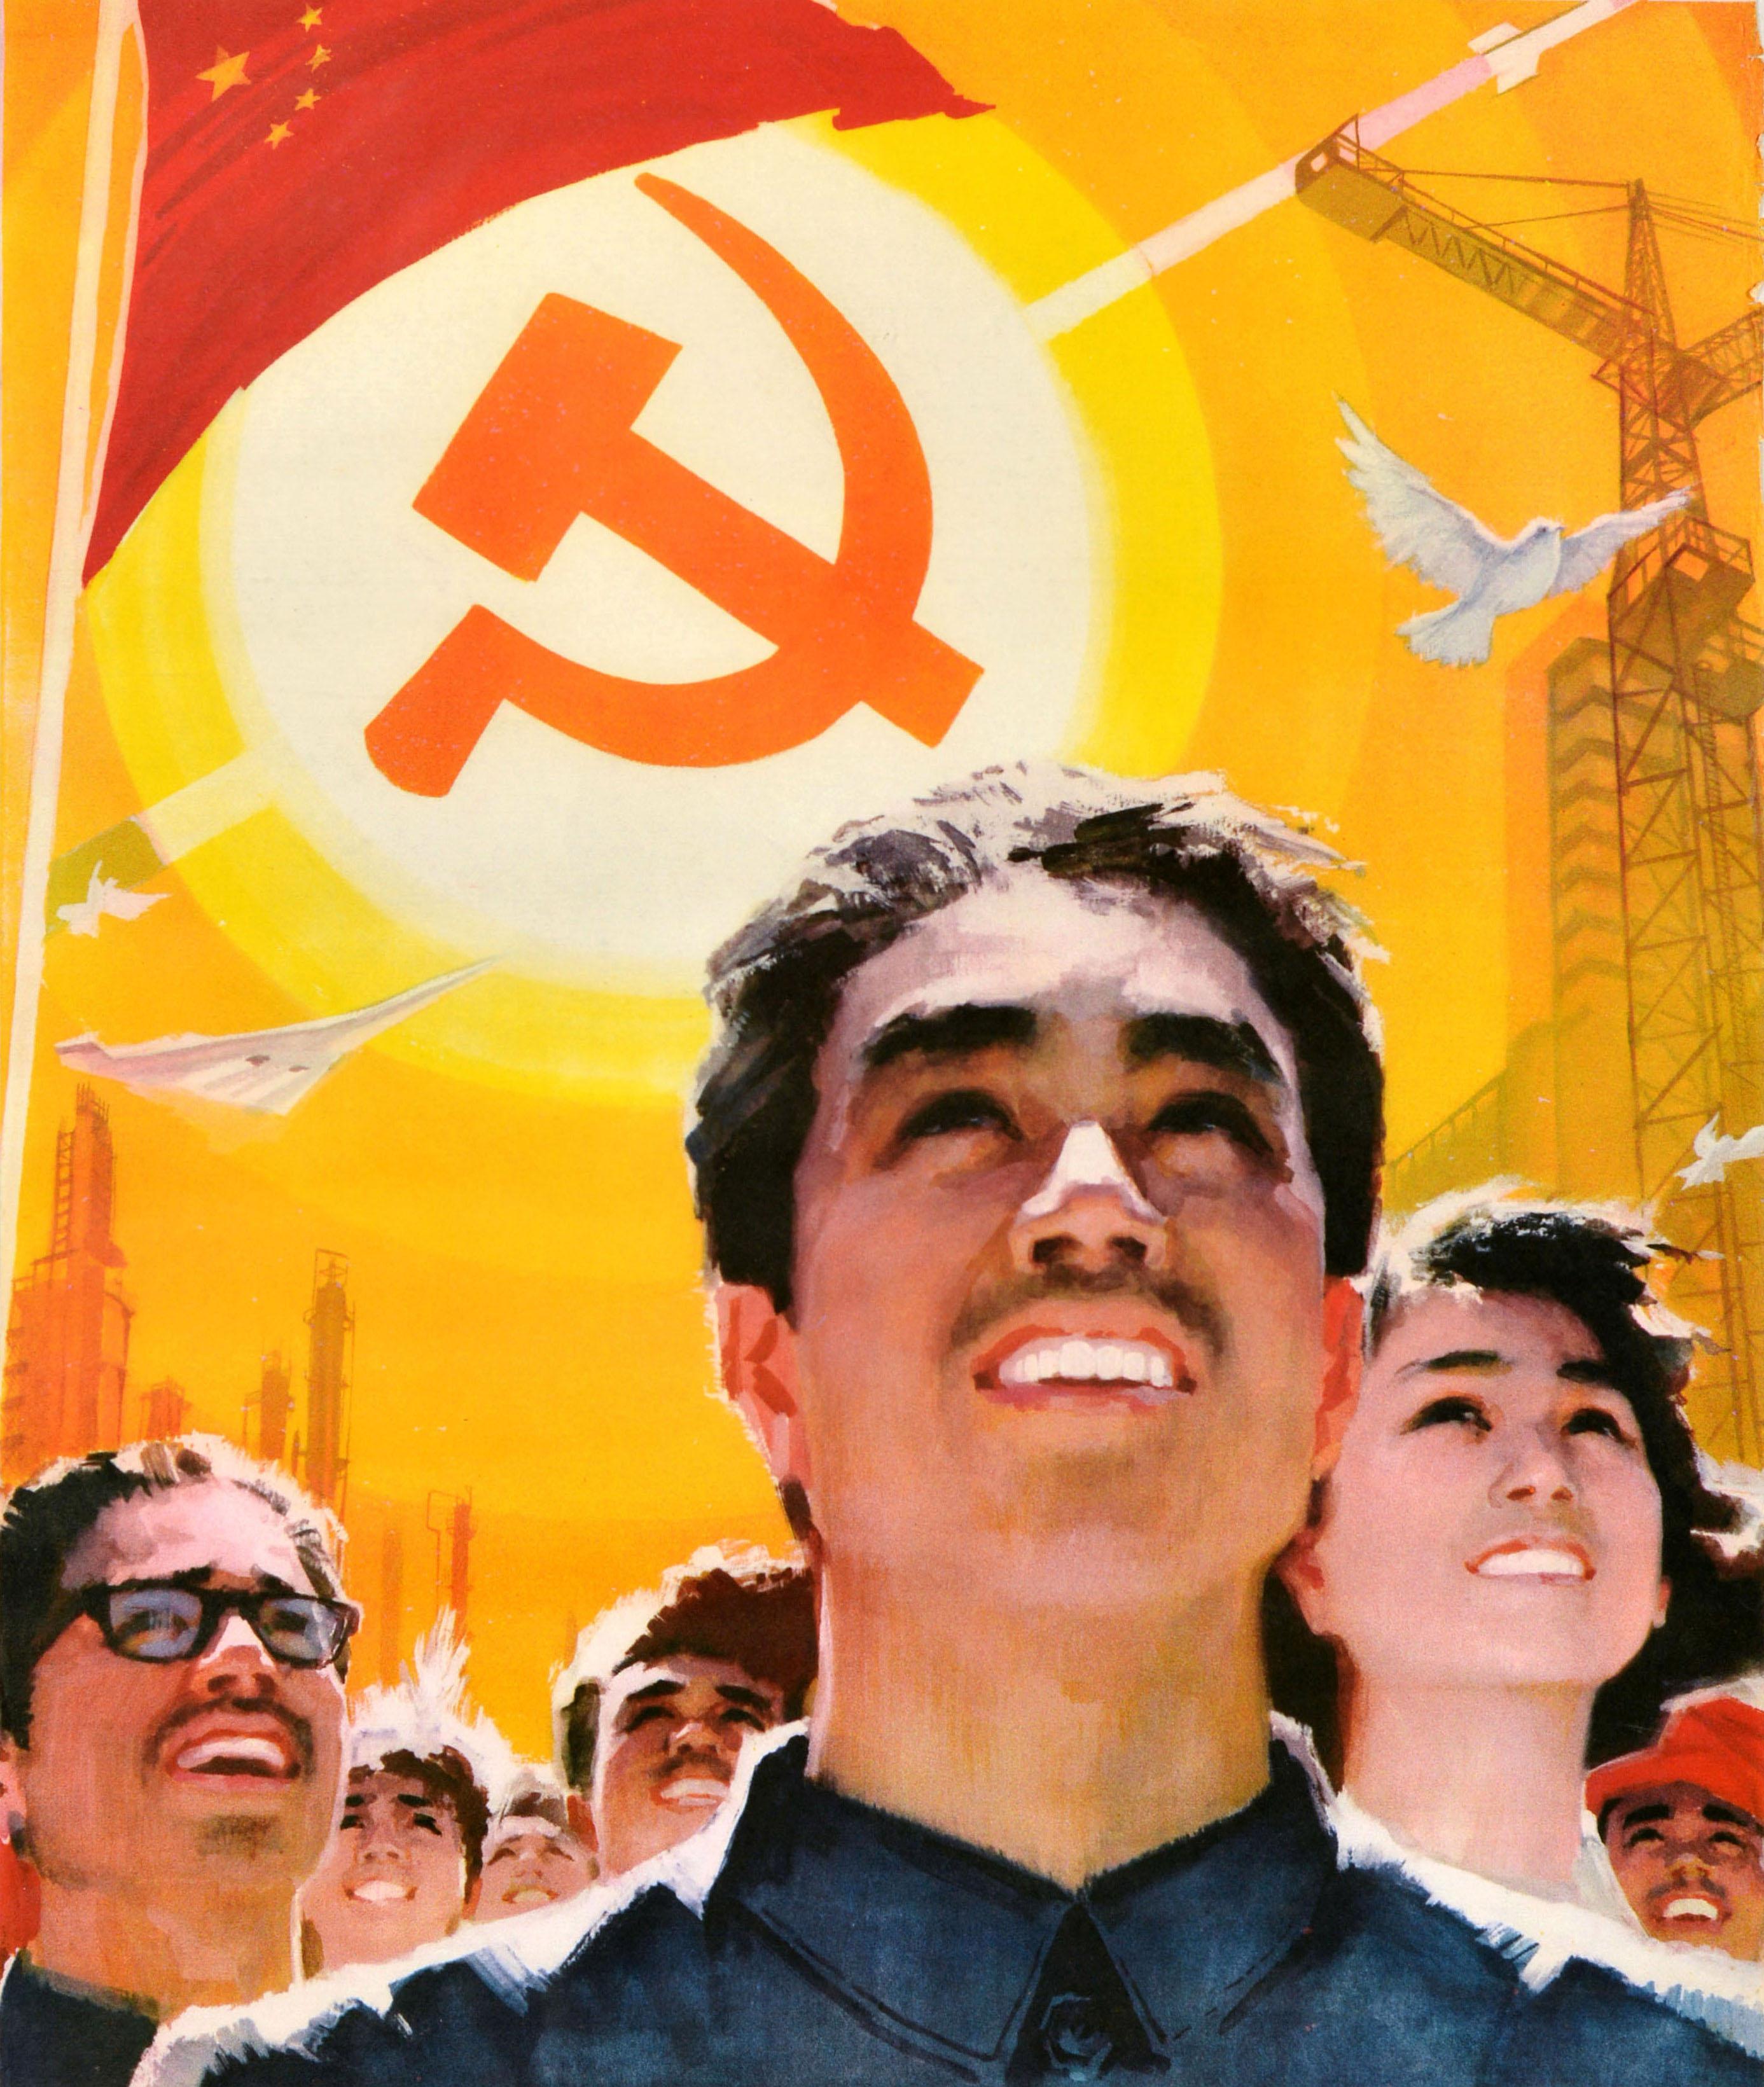 Originales Original-Vintage- Propagandaplakat der chinesischen Kommunistischen Partei, Unsere Flagge ist Kommunismus – Print von Unknown